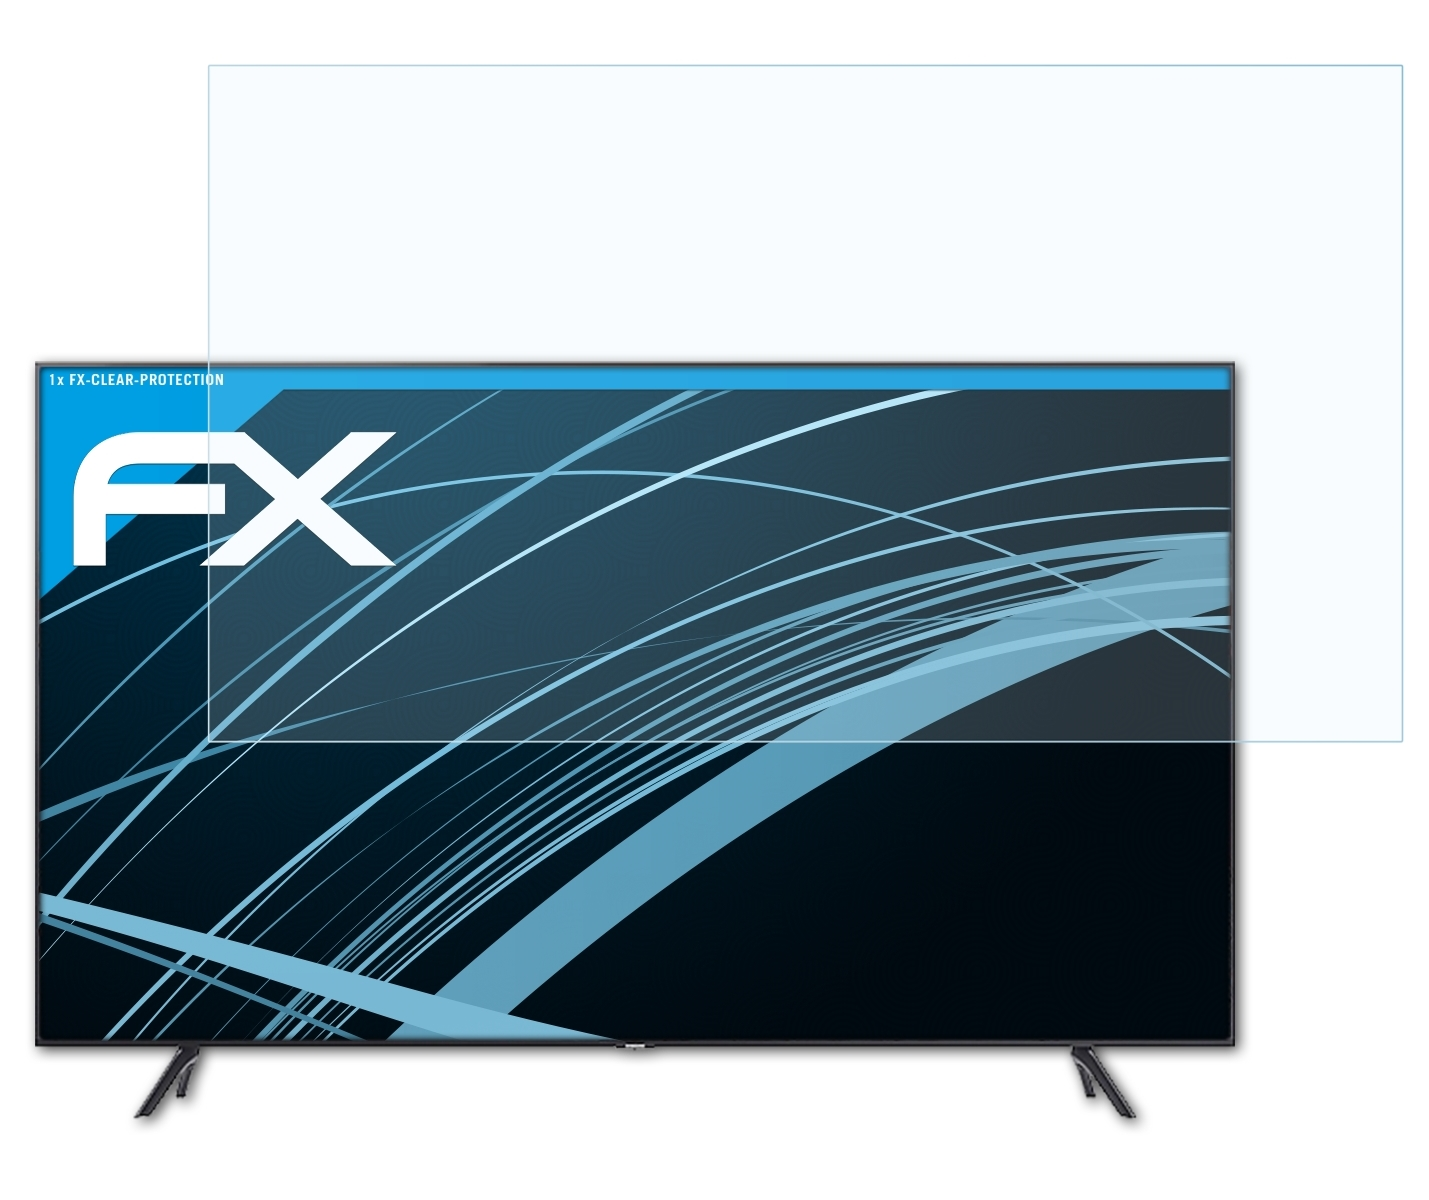 ATFOLIX FX-Clear Displayschutz(für Samsung GU-TU7199 (43 inch))